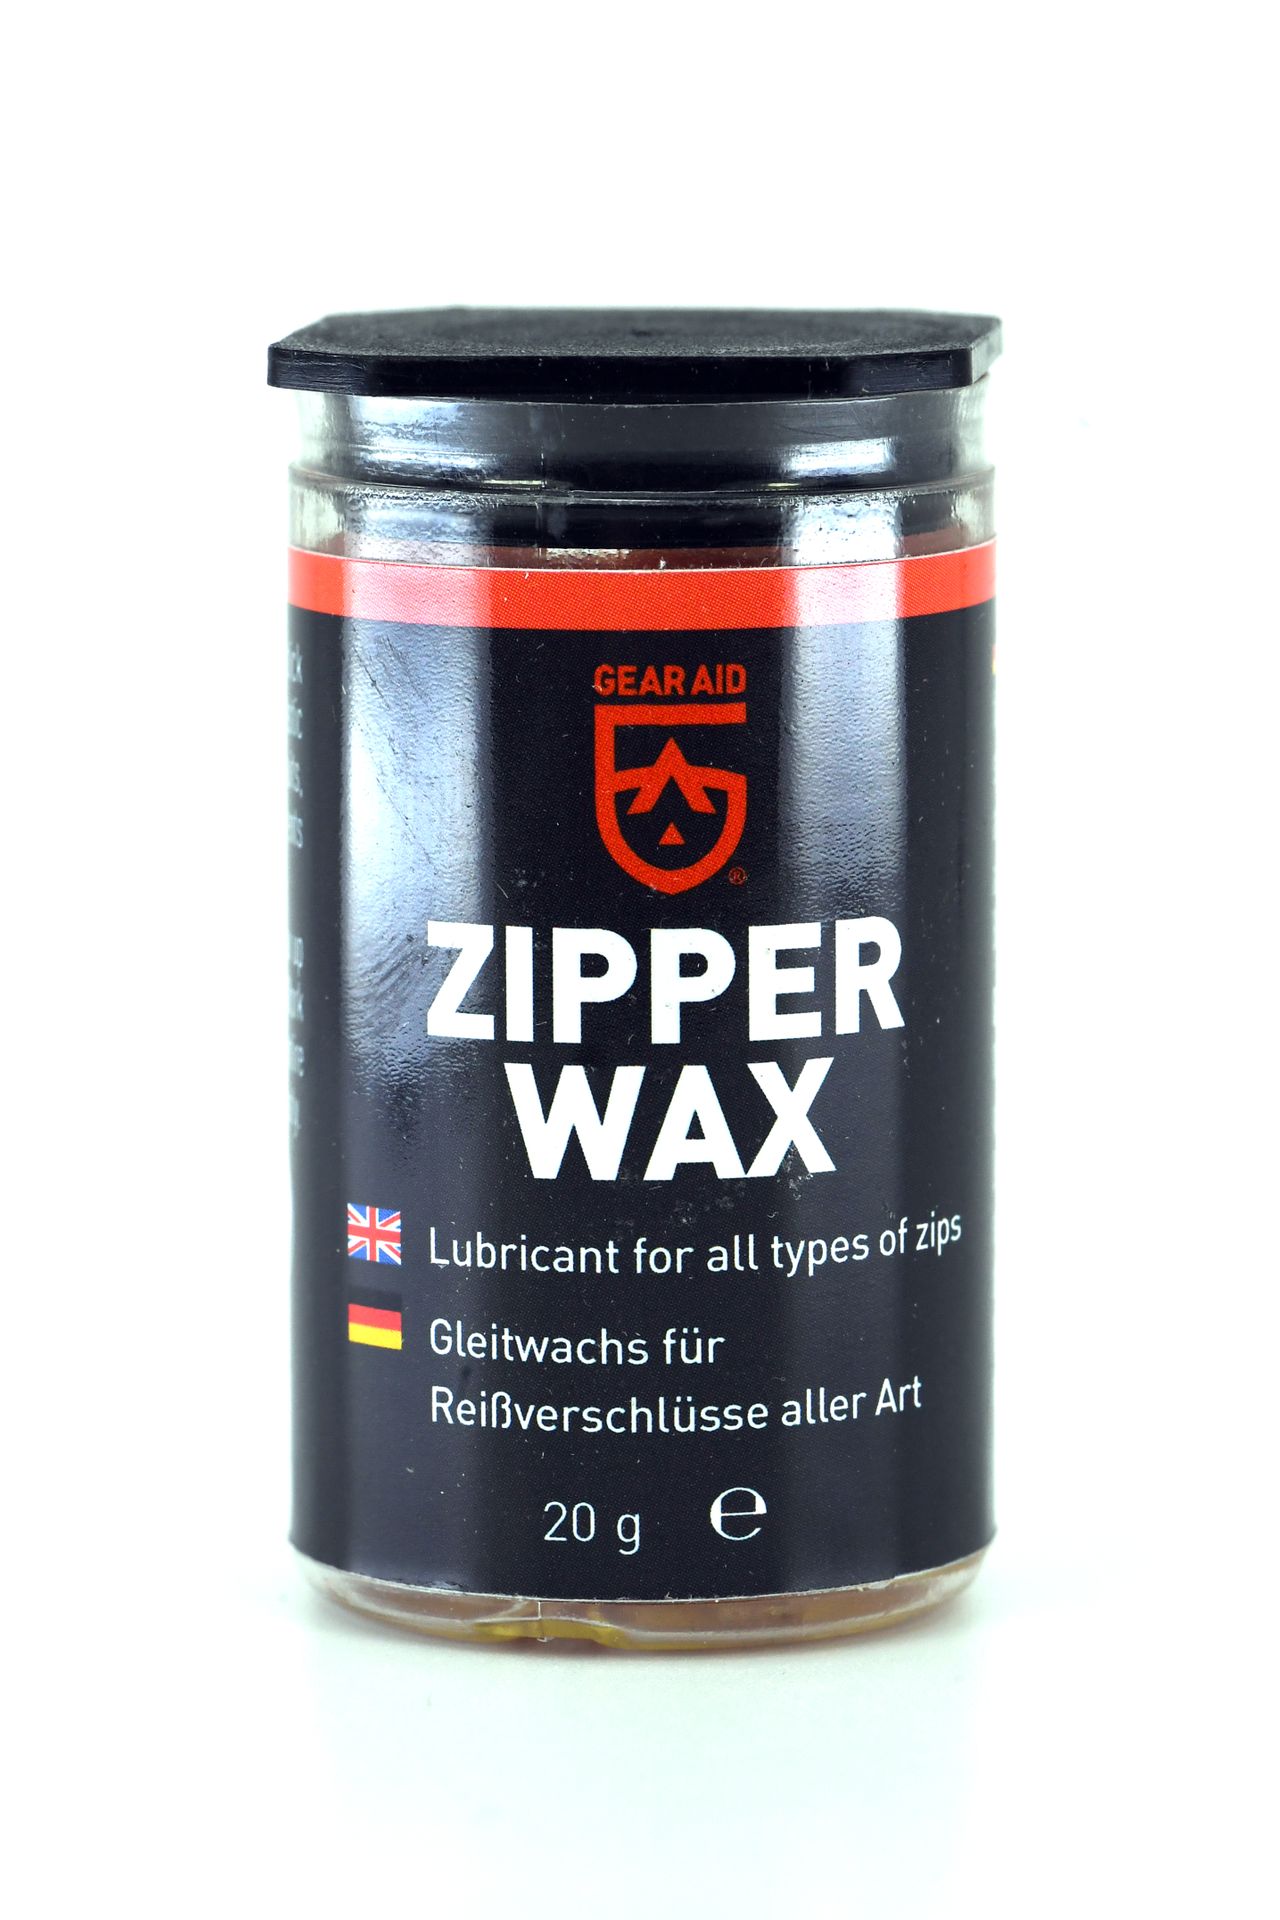 Gear Aid Zipper Wax 20g